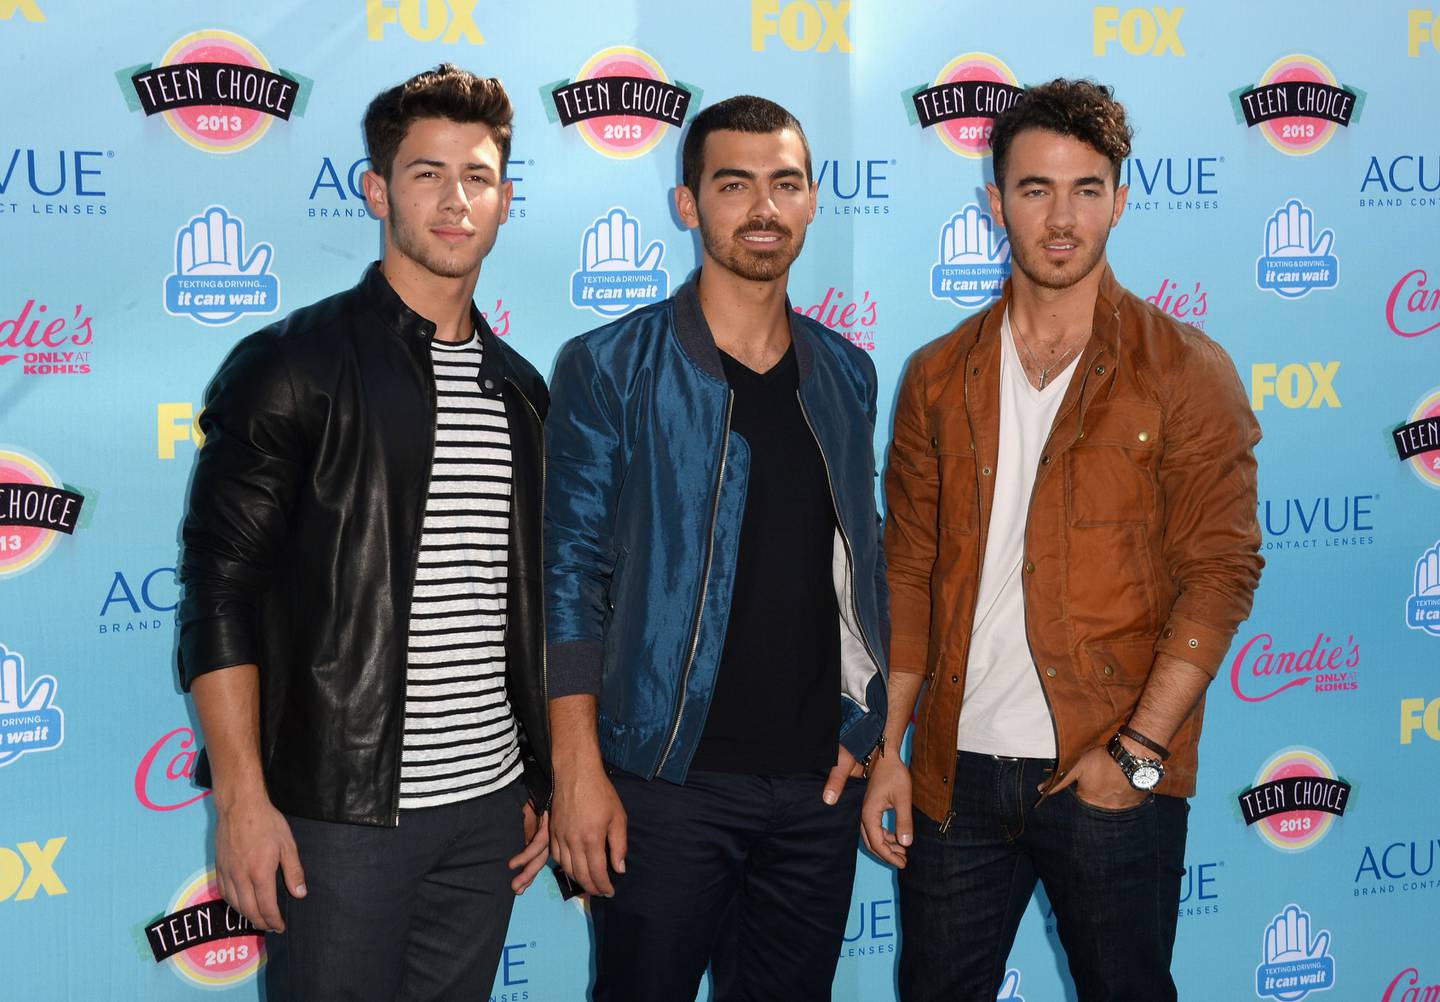 Los Jonas Brothers Anuncian Su Regreso A Los Escenarios La Teja 7203